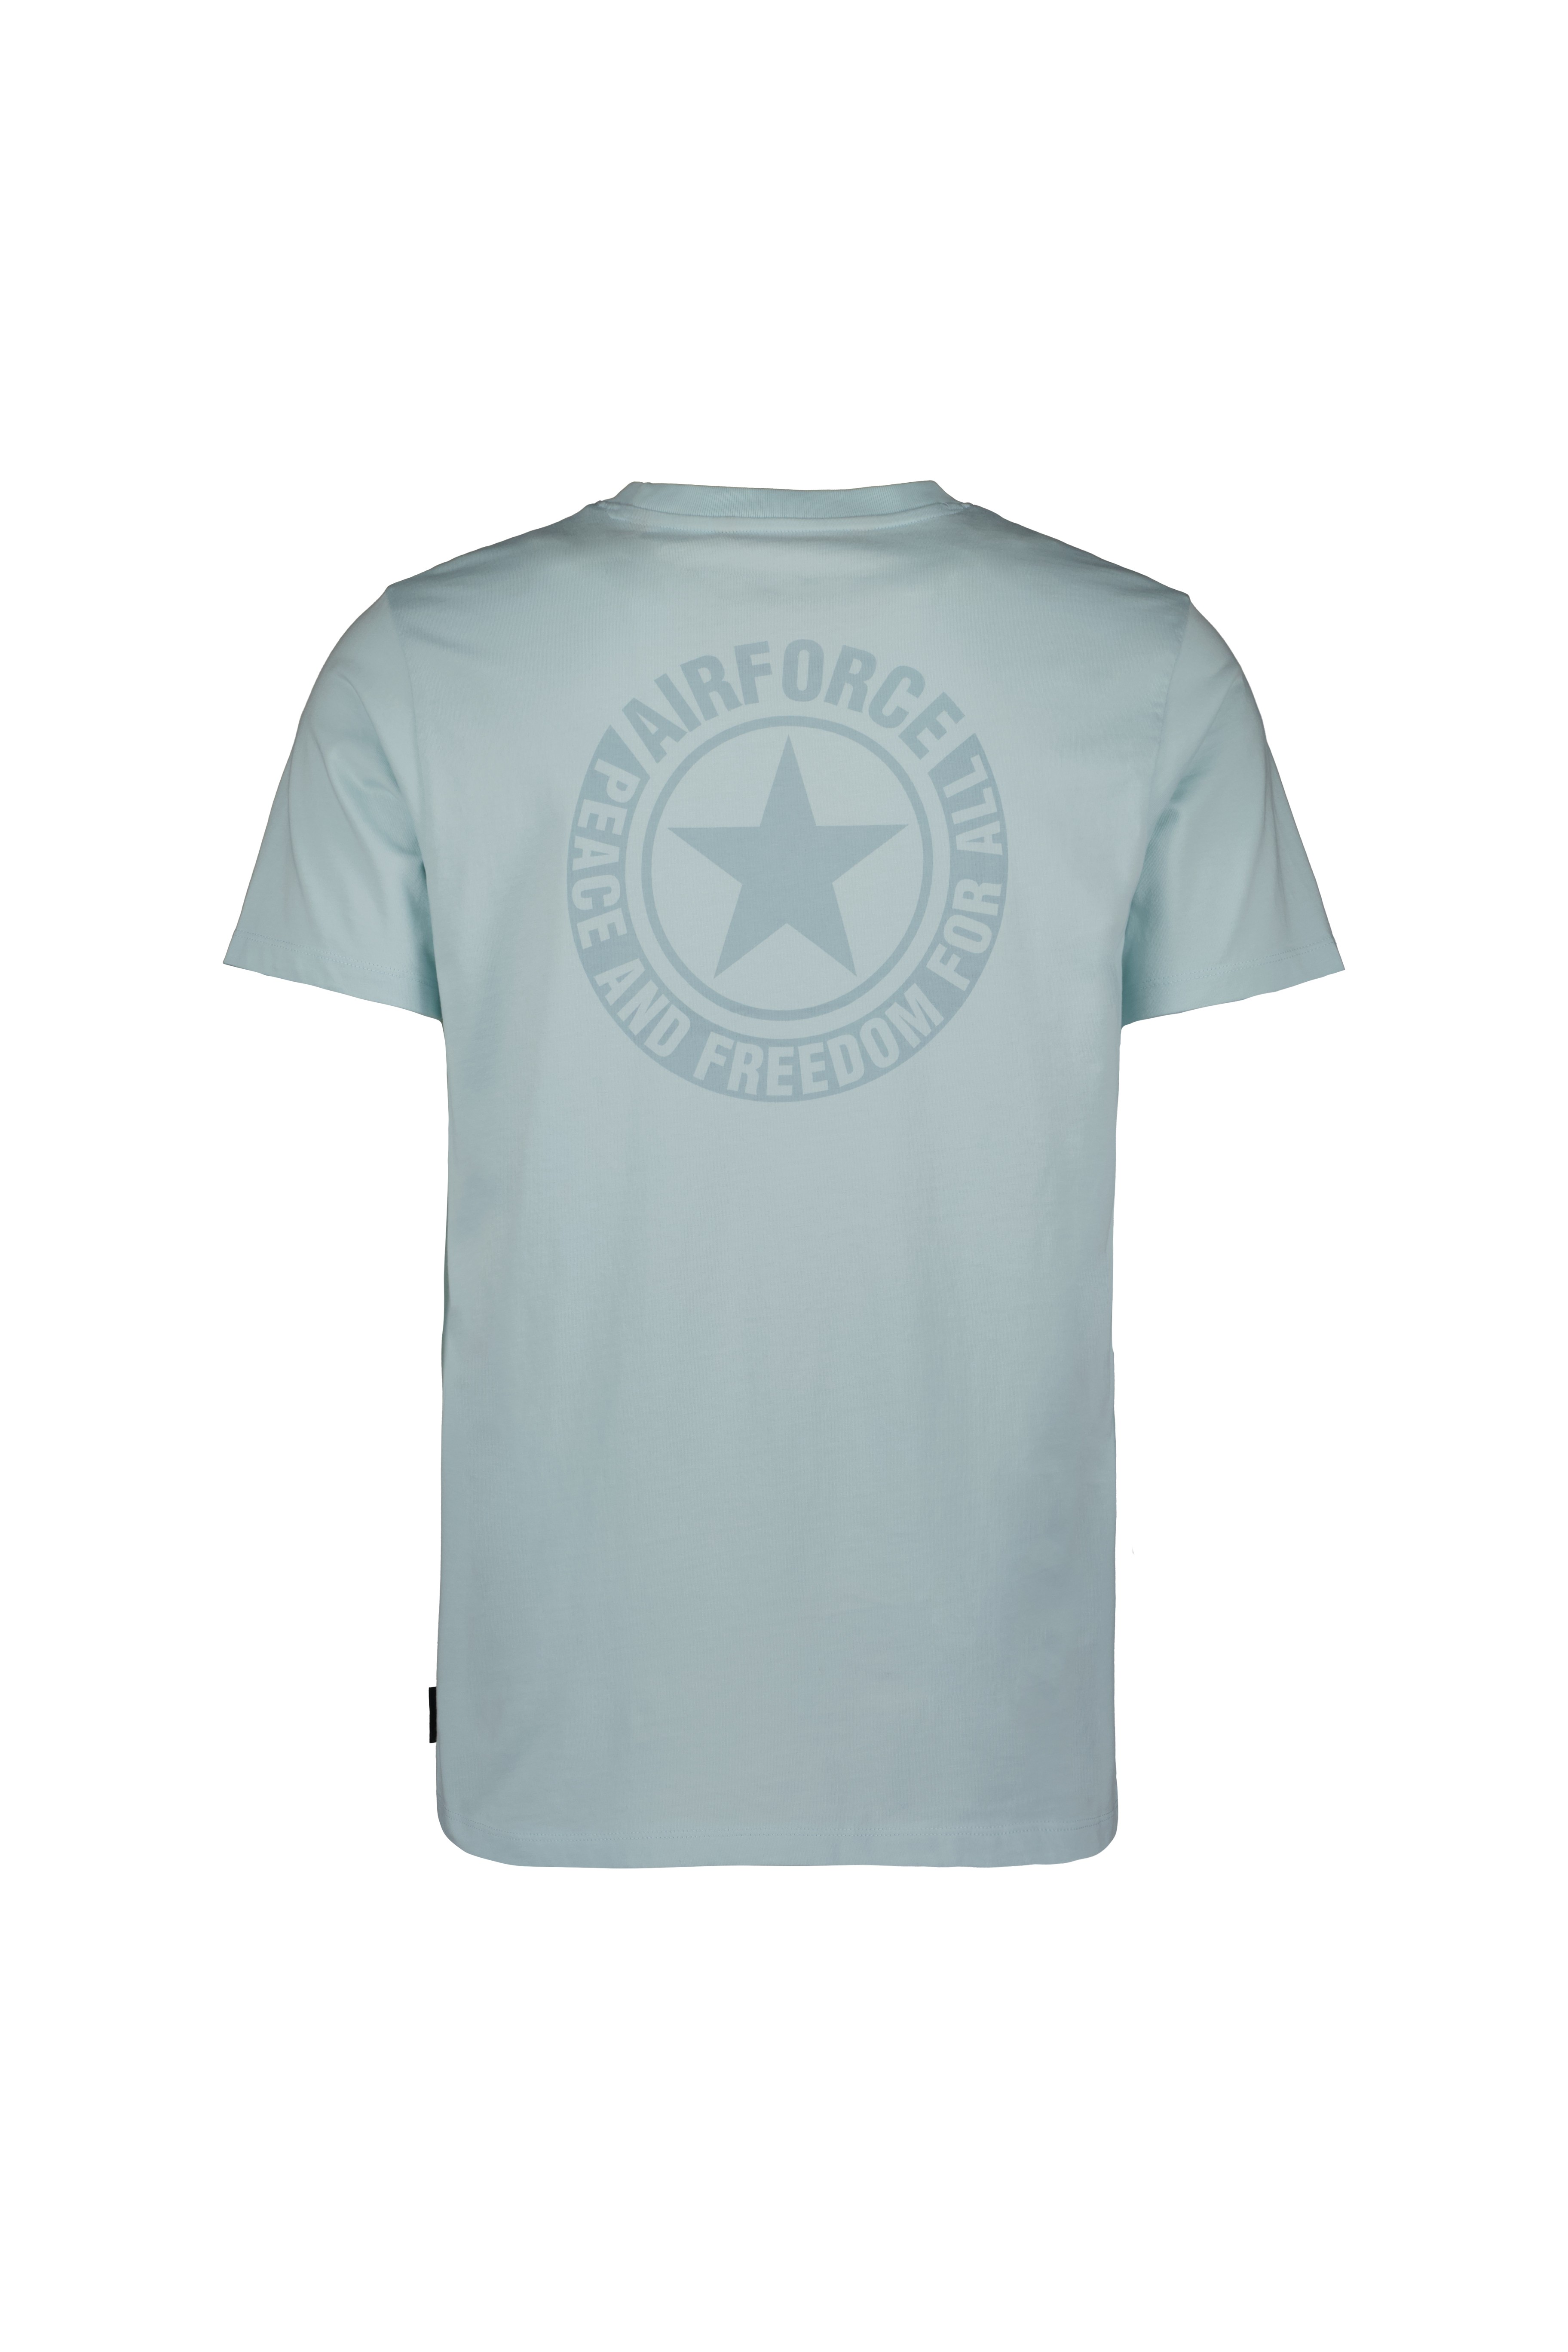 Airforce Mens Wording Logo T-Shirt